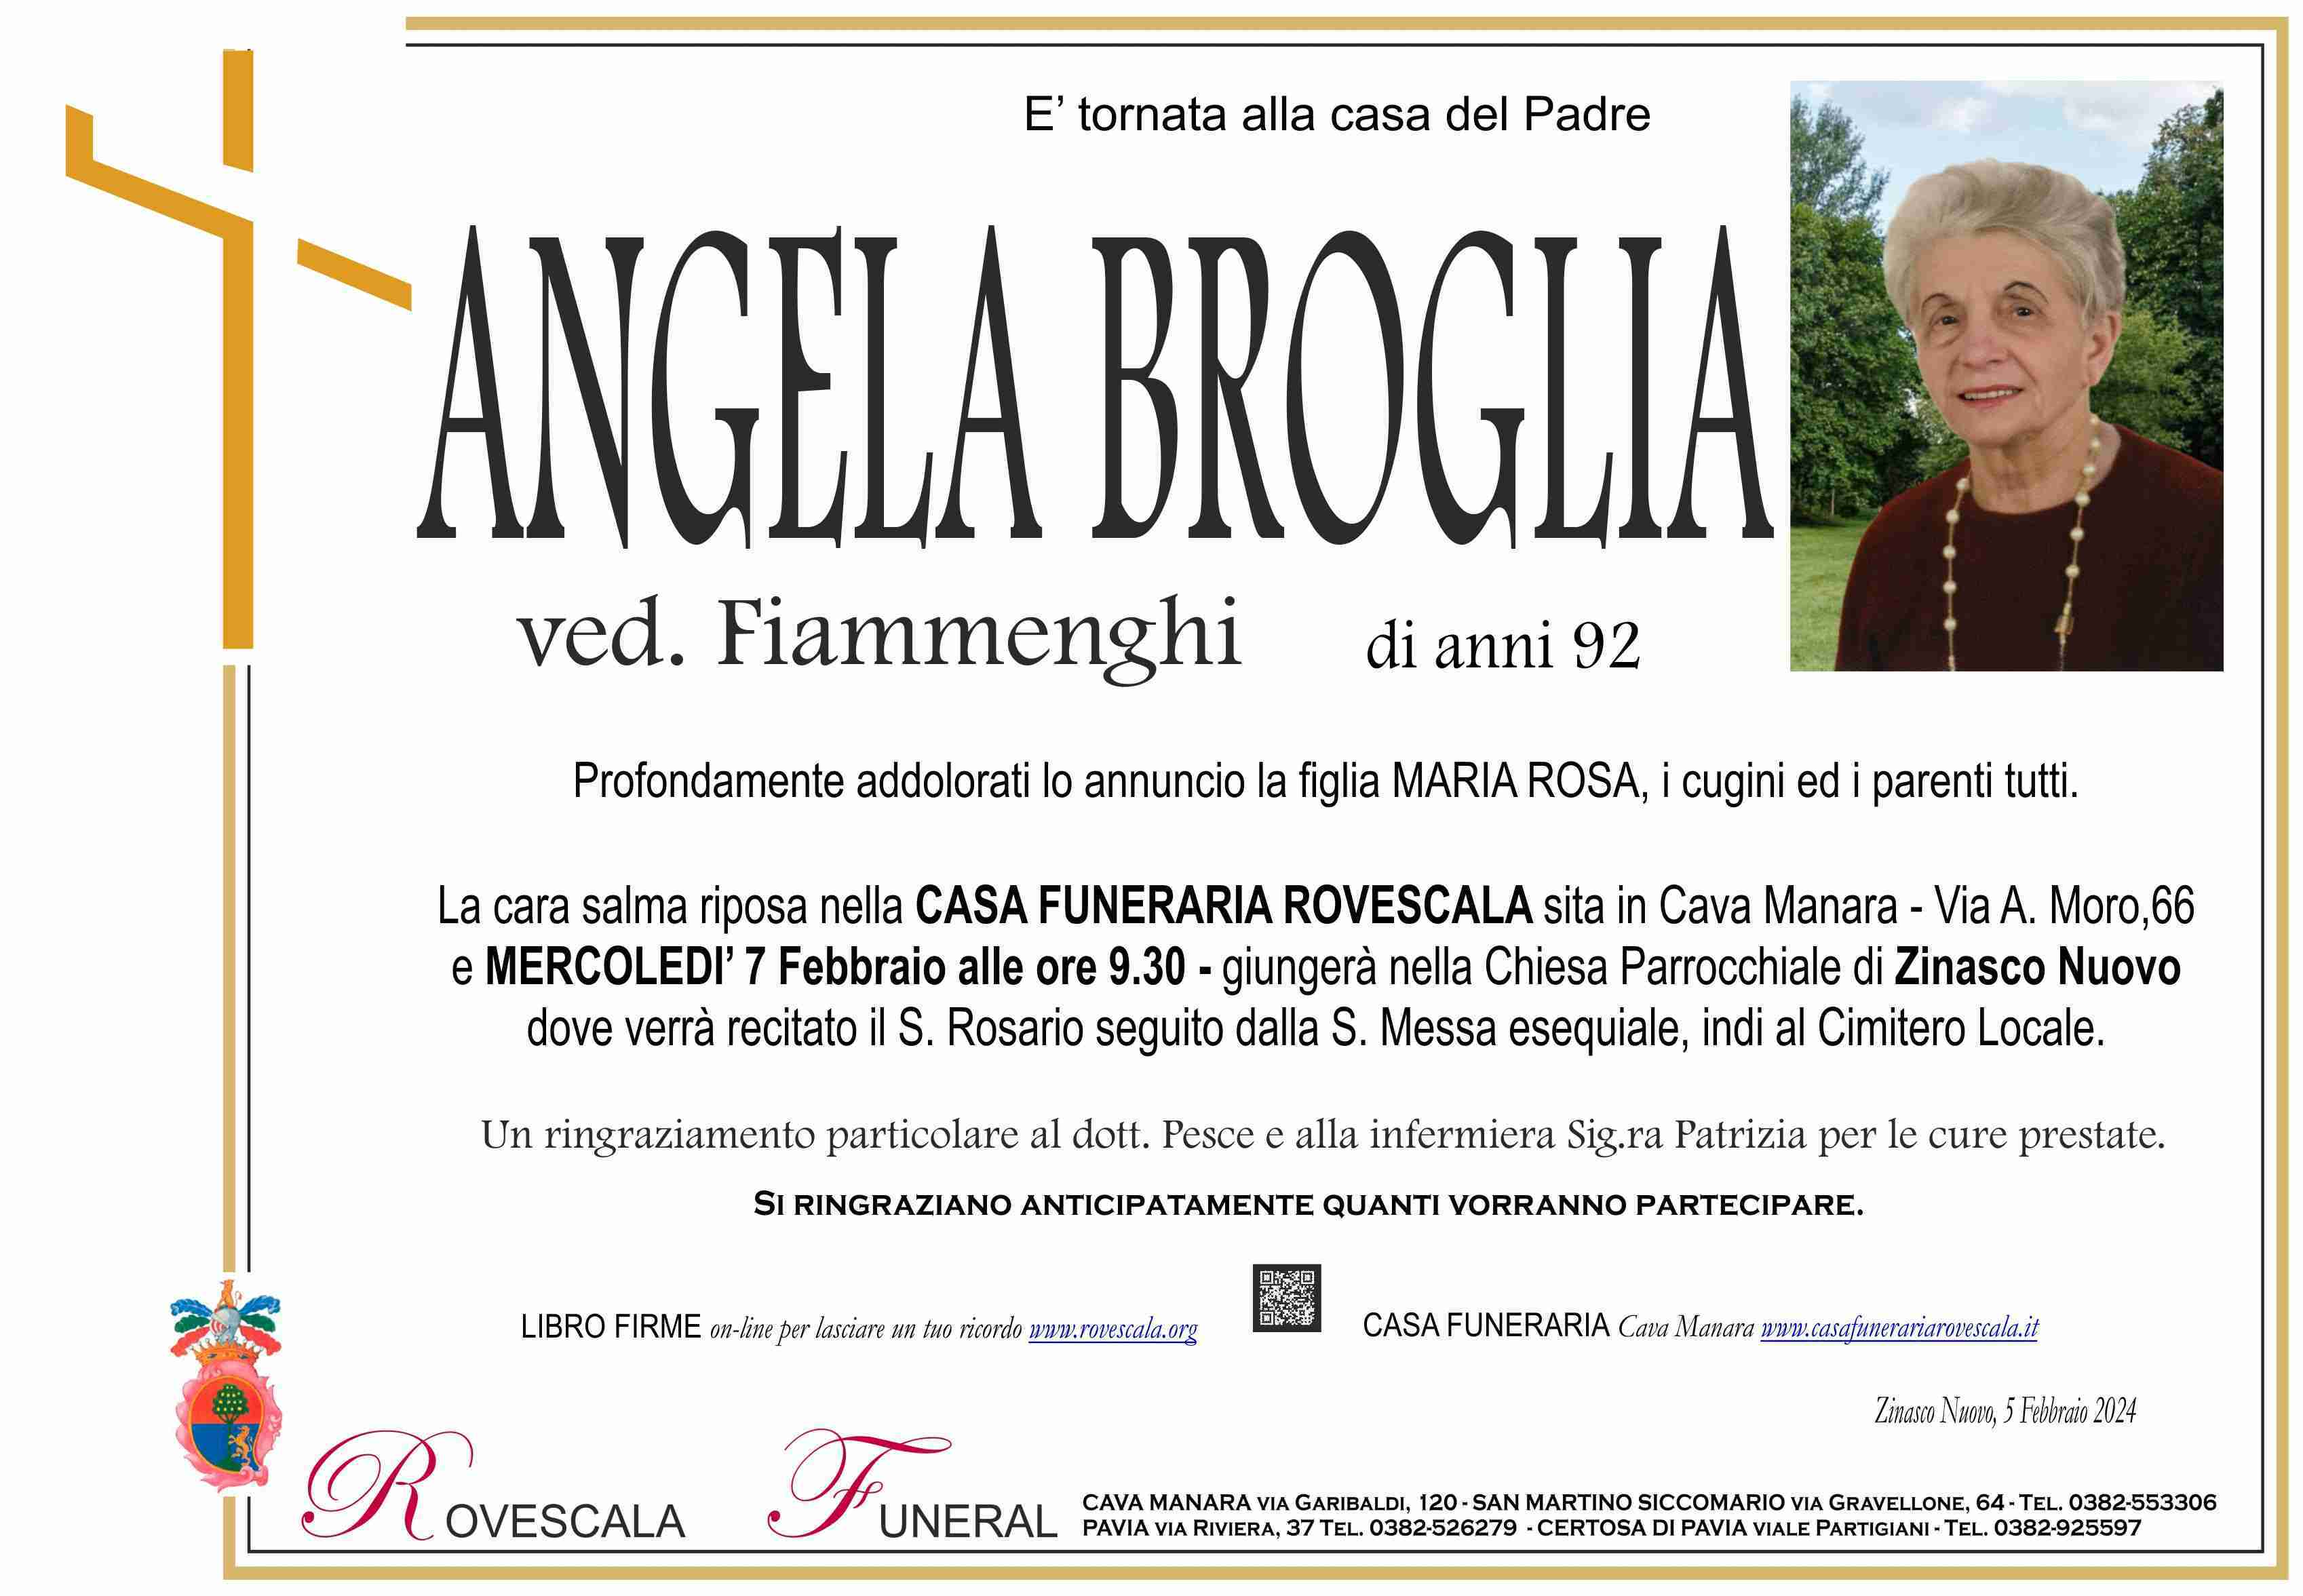 Angela Broglia